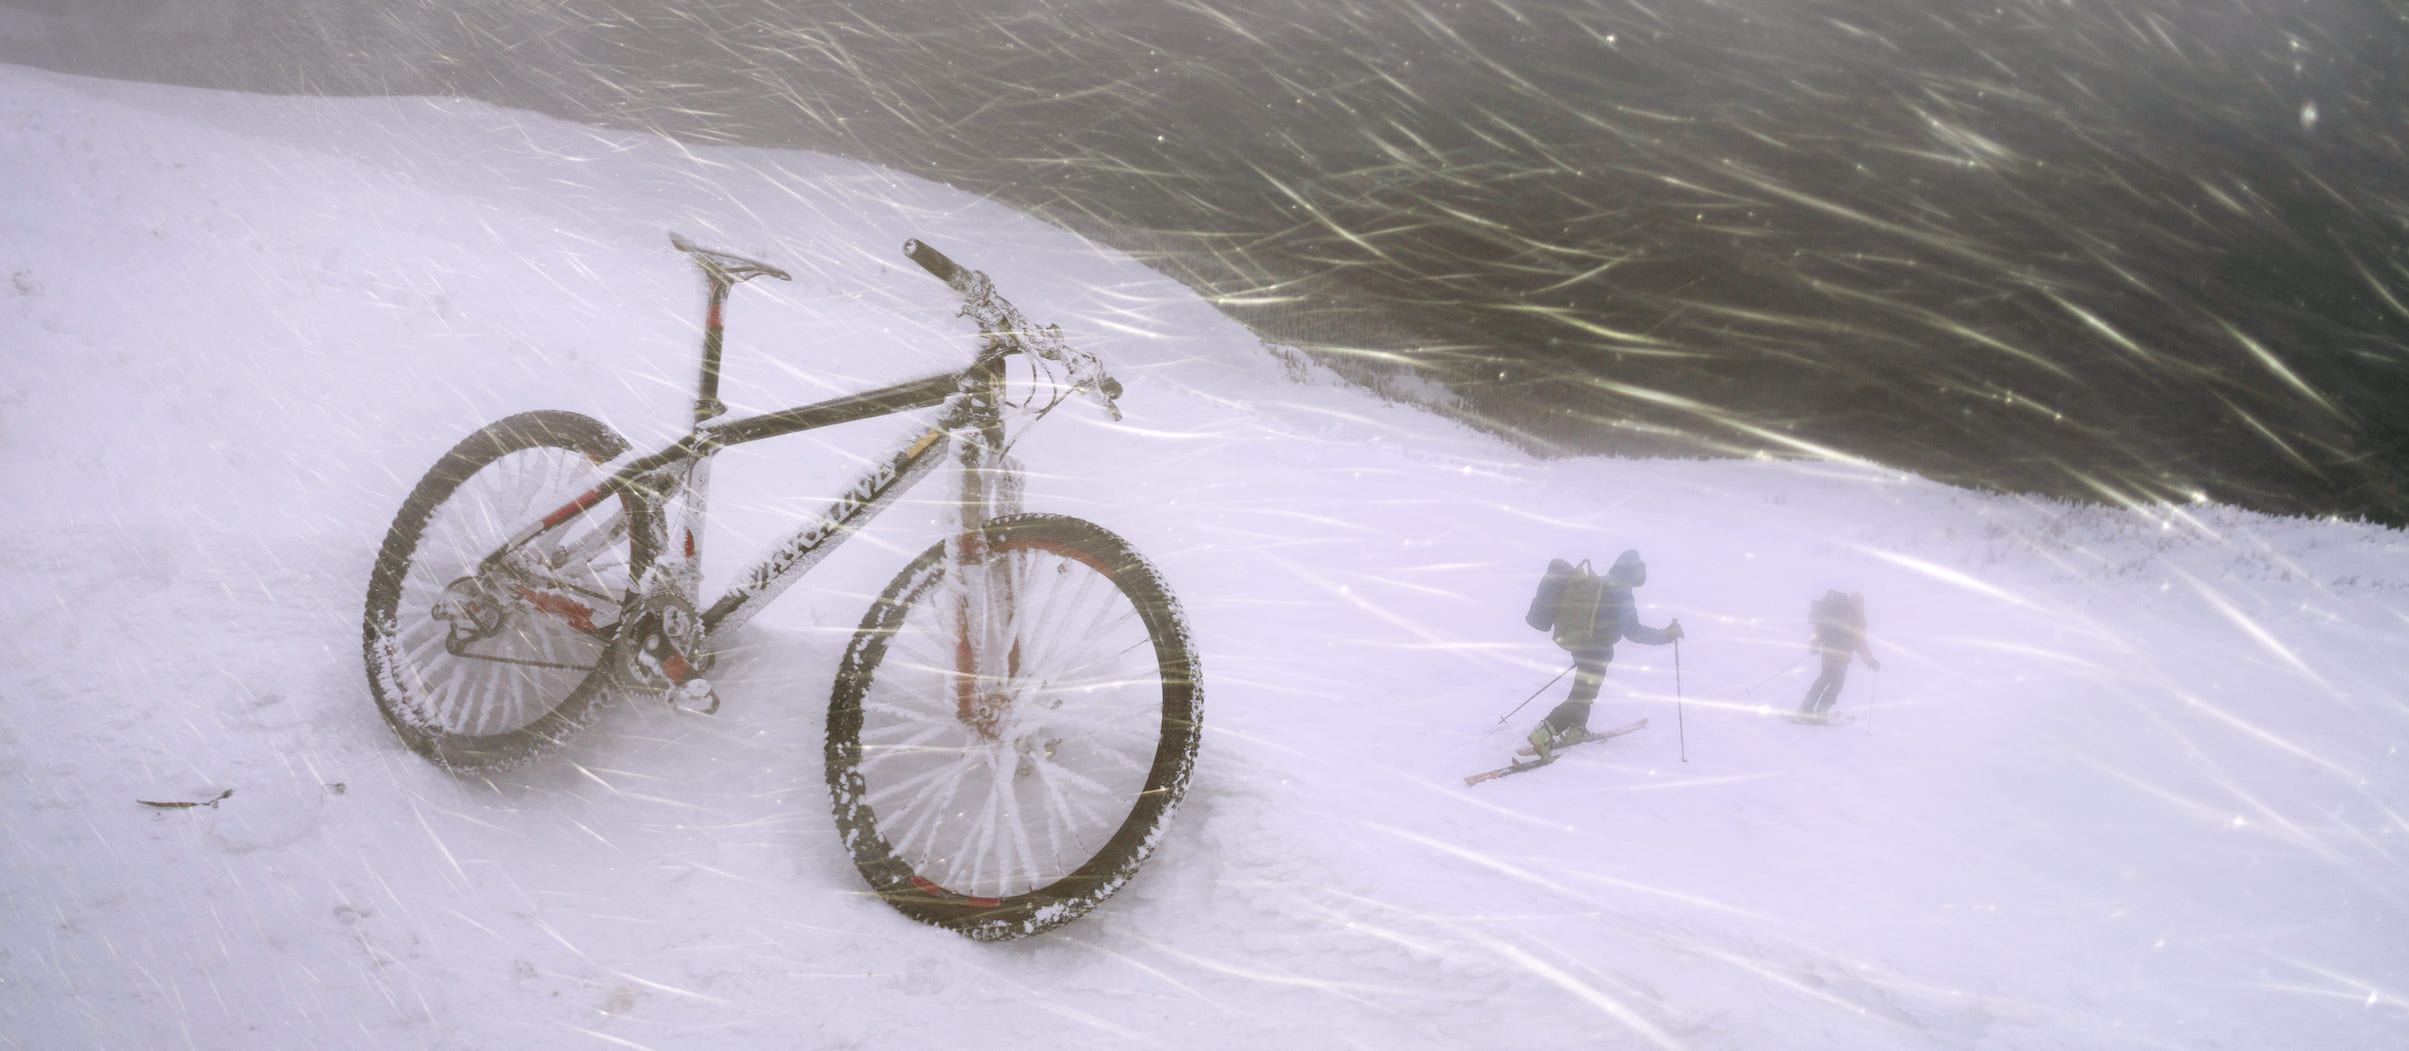 Radtour bei Kälte, Radfahren im Winter